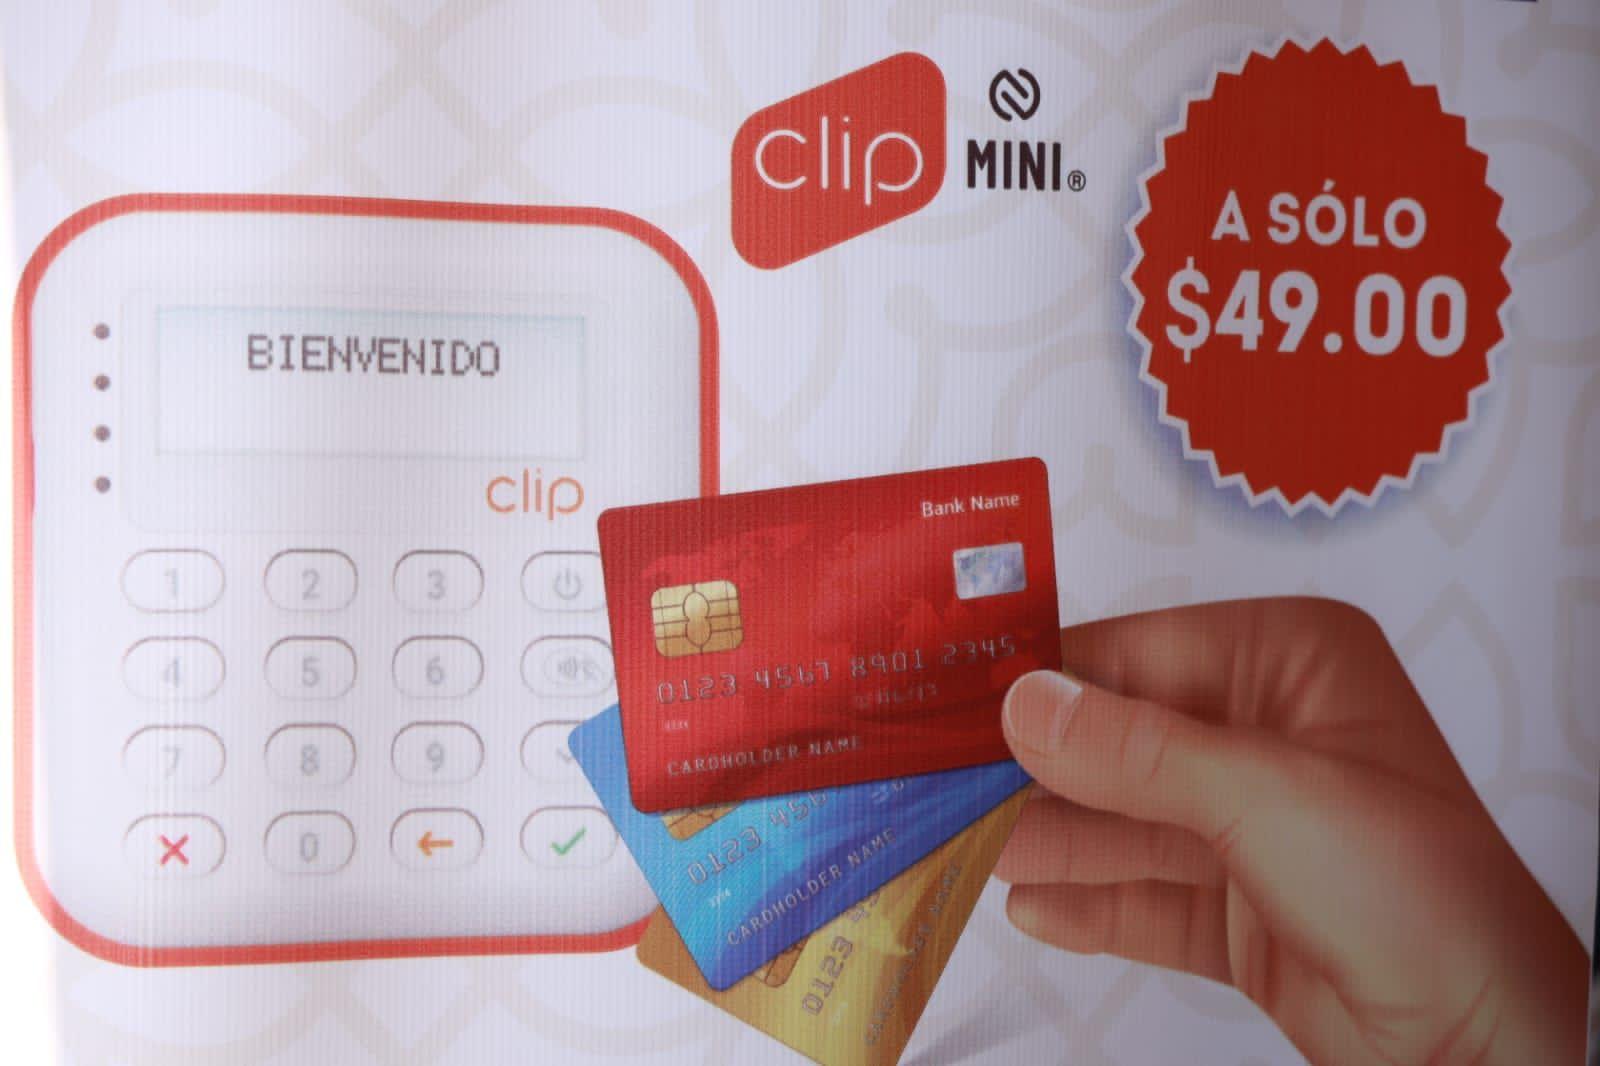 Entrega Chiautempan 50 puntos de venta “Clip” a Micro y Pequeñas Empresas